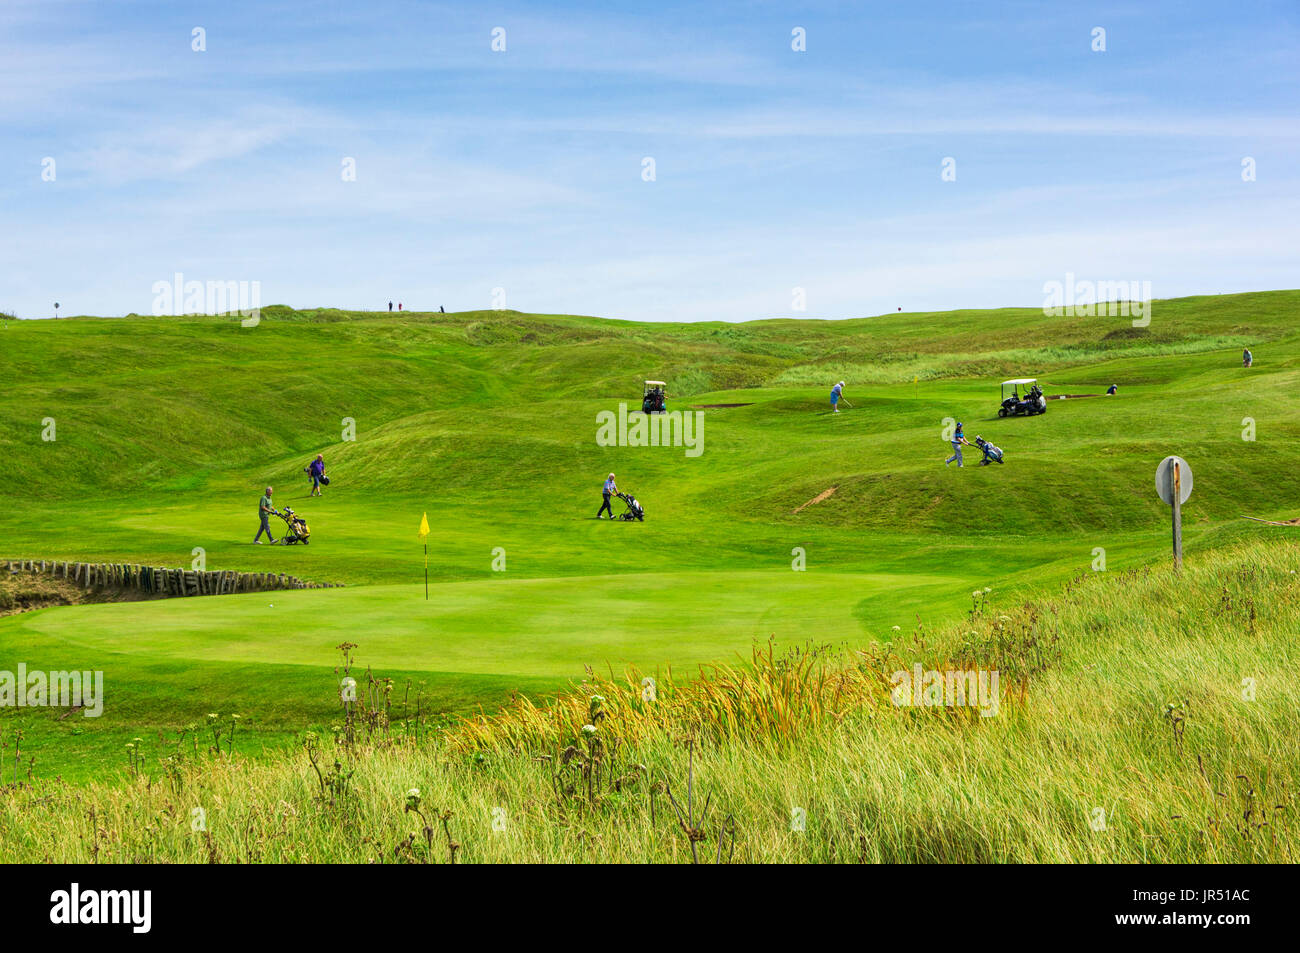 Los golfistas en un campo de golf Links sobre la costa, Inglaterra, Reino Unido. Foto de stock